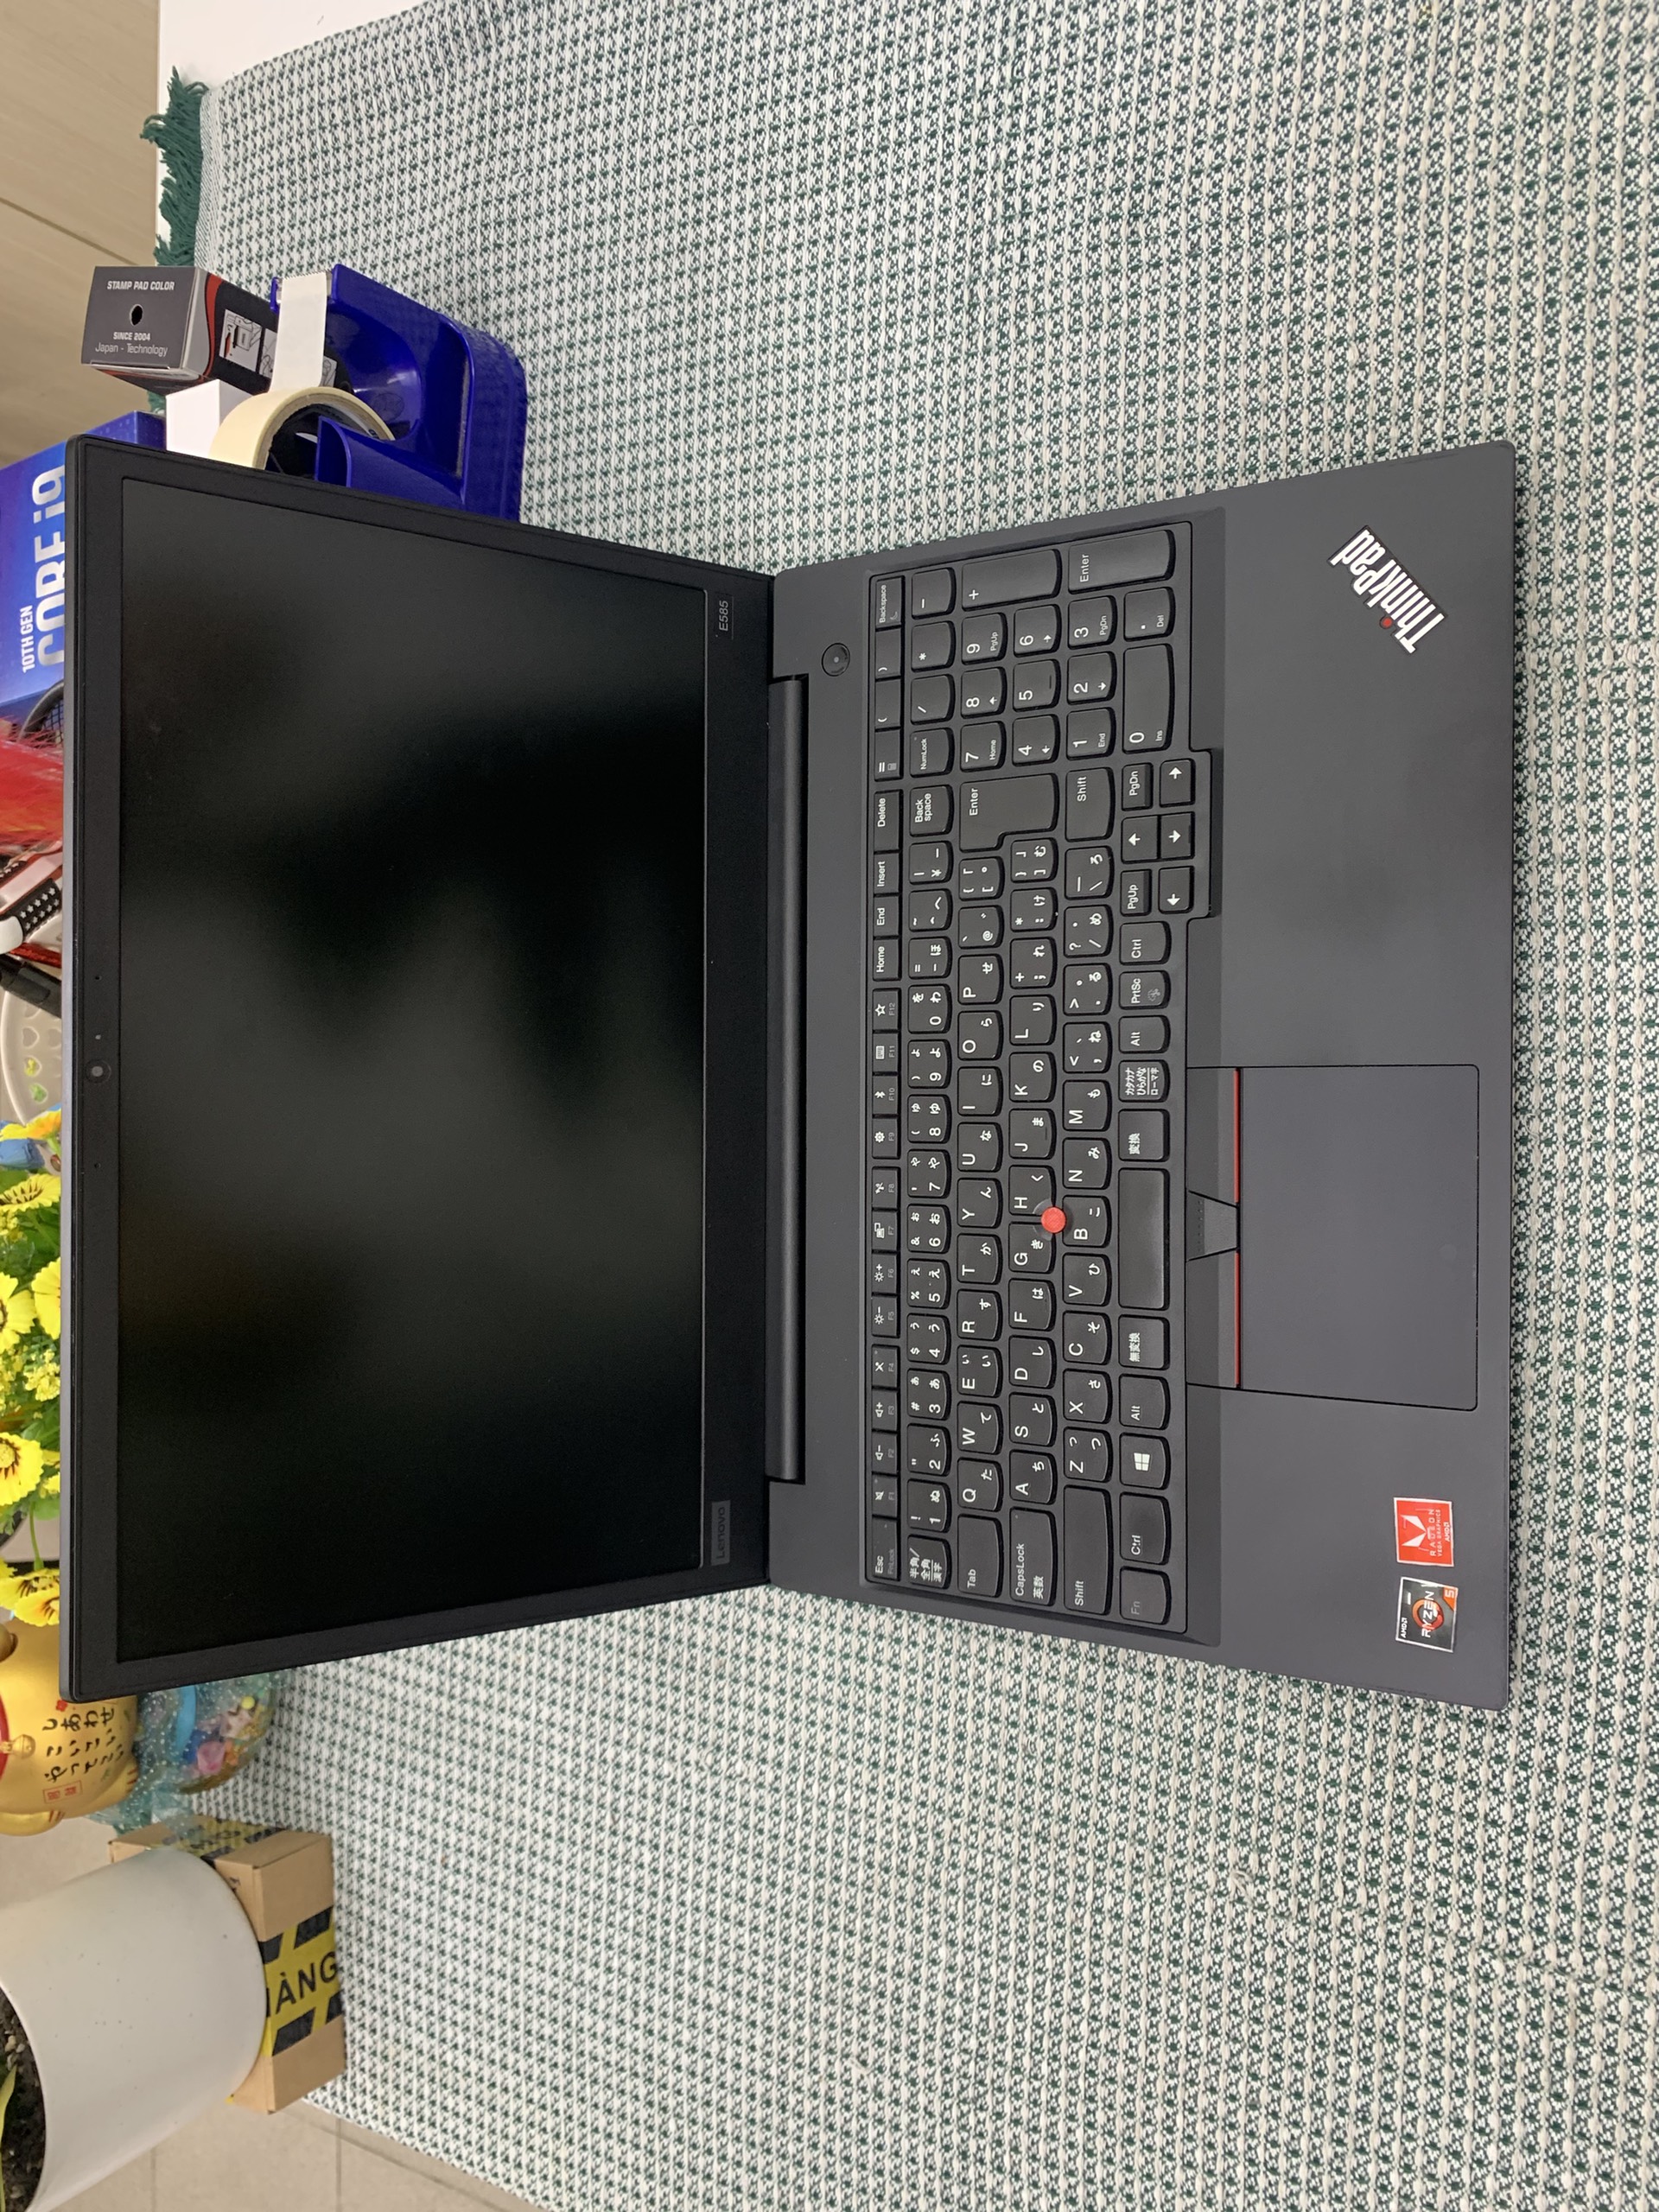 ThinkPad E585